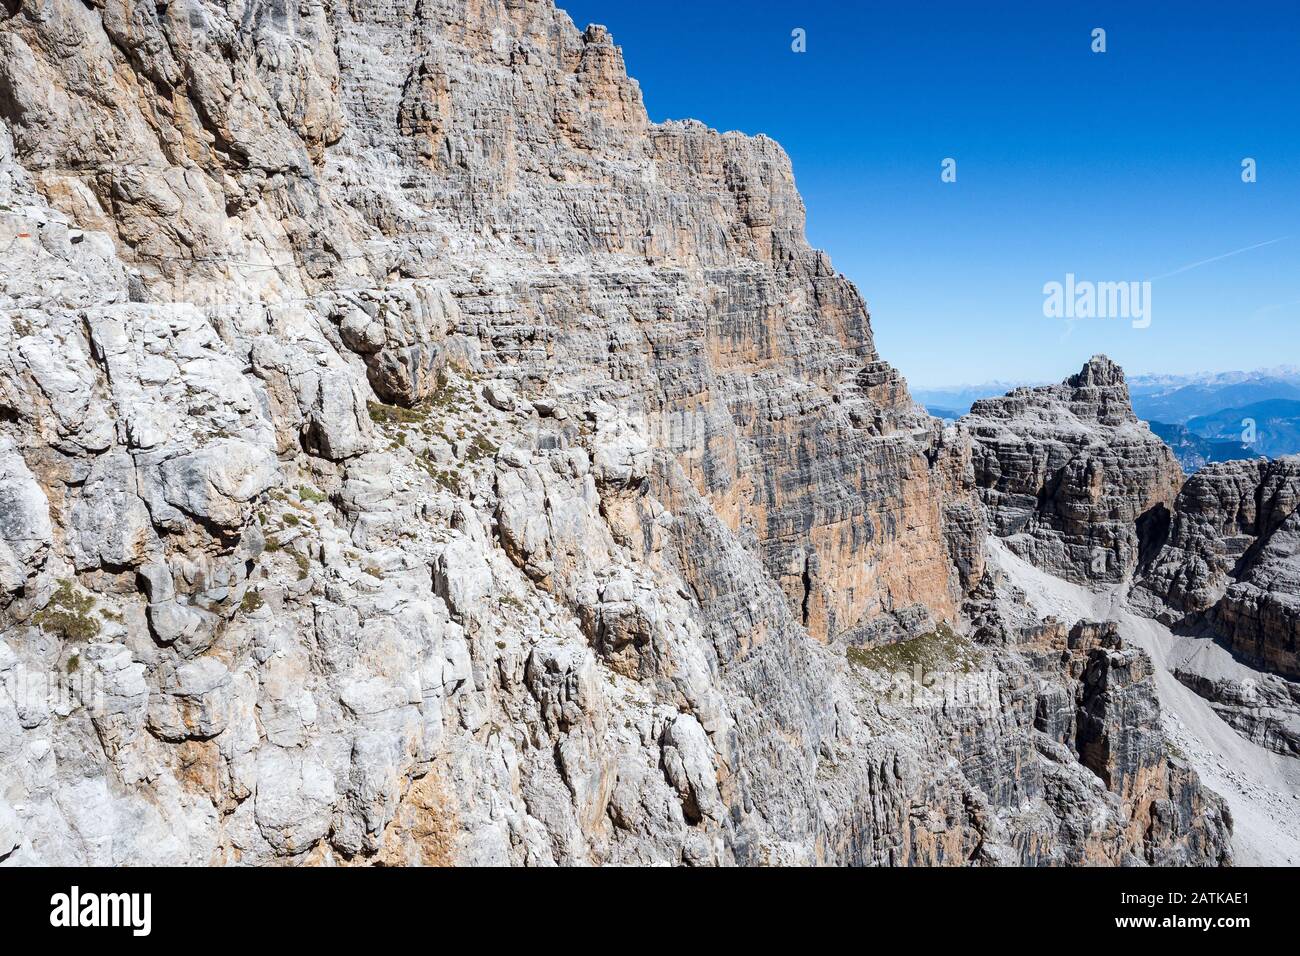 Festseilweg, Klettersteig. Italienische Alpen. Bergtourismus in den Dolden. Region Brenta, Italien. Stockfoto